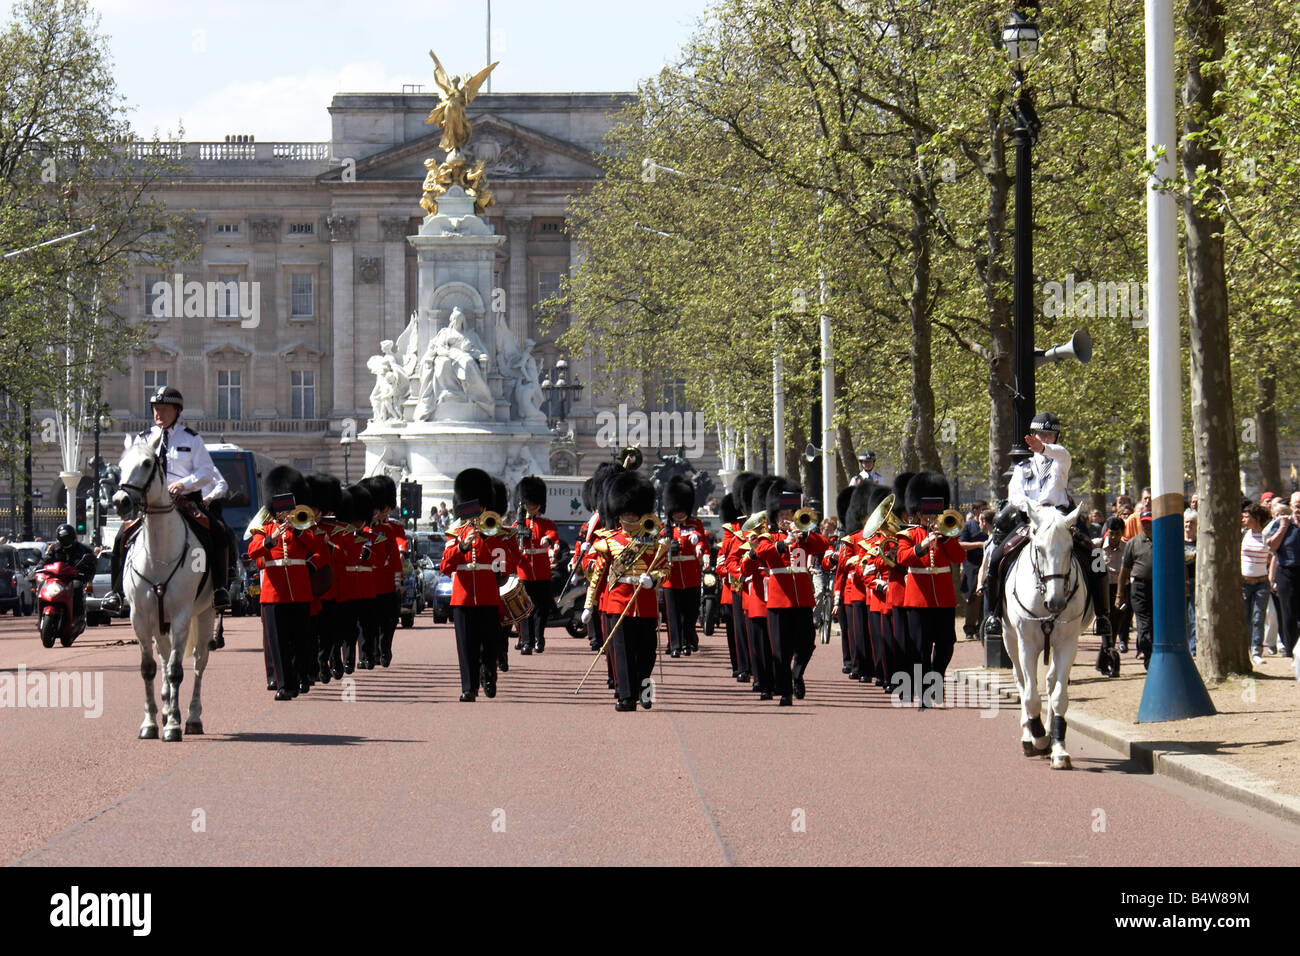 Banda Militare marching giocando a modificare la protezione nella parte anteriore del memoriale della Victoria e Buckingham Palace SW1 London Inghilterra England Foto Stock